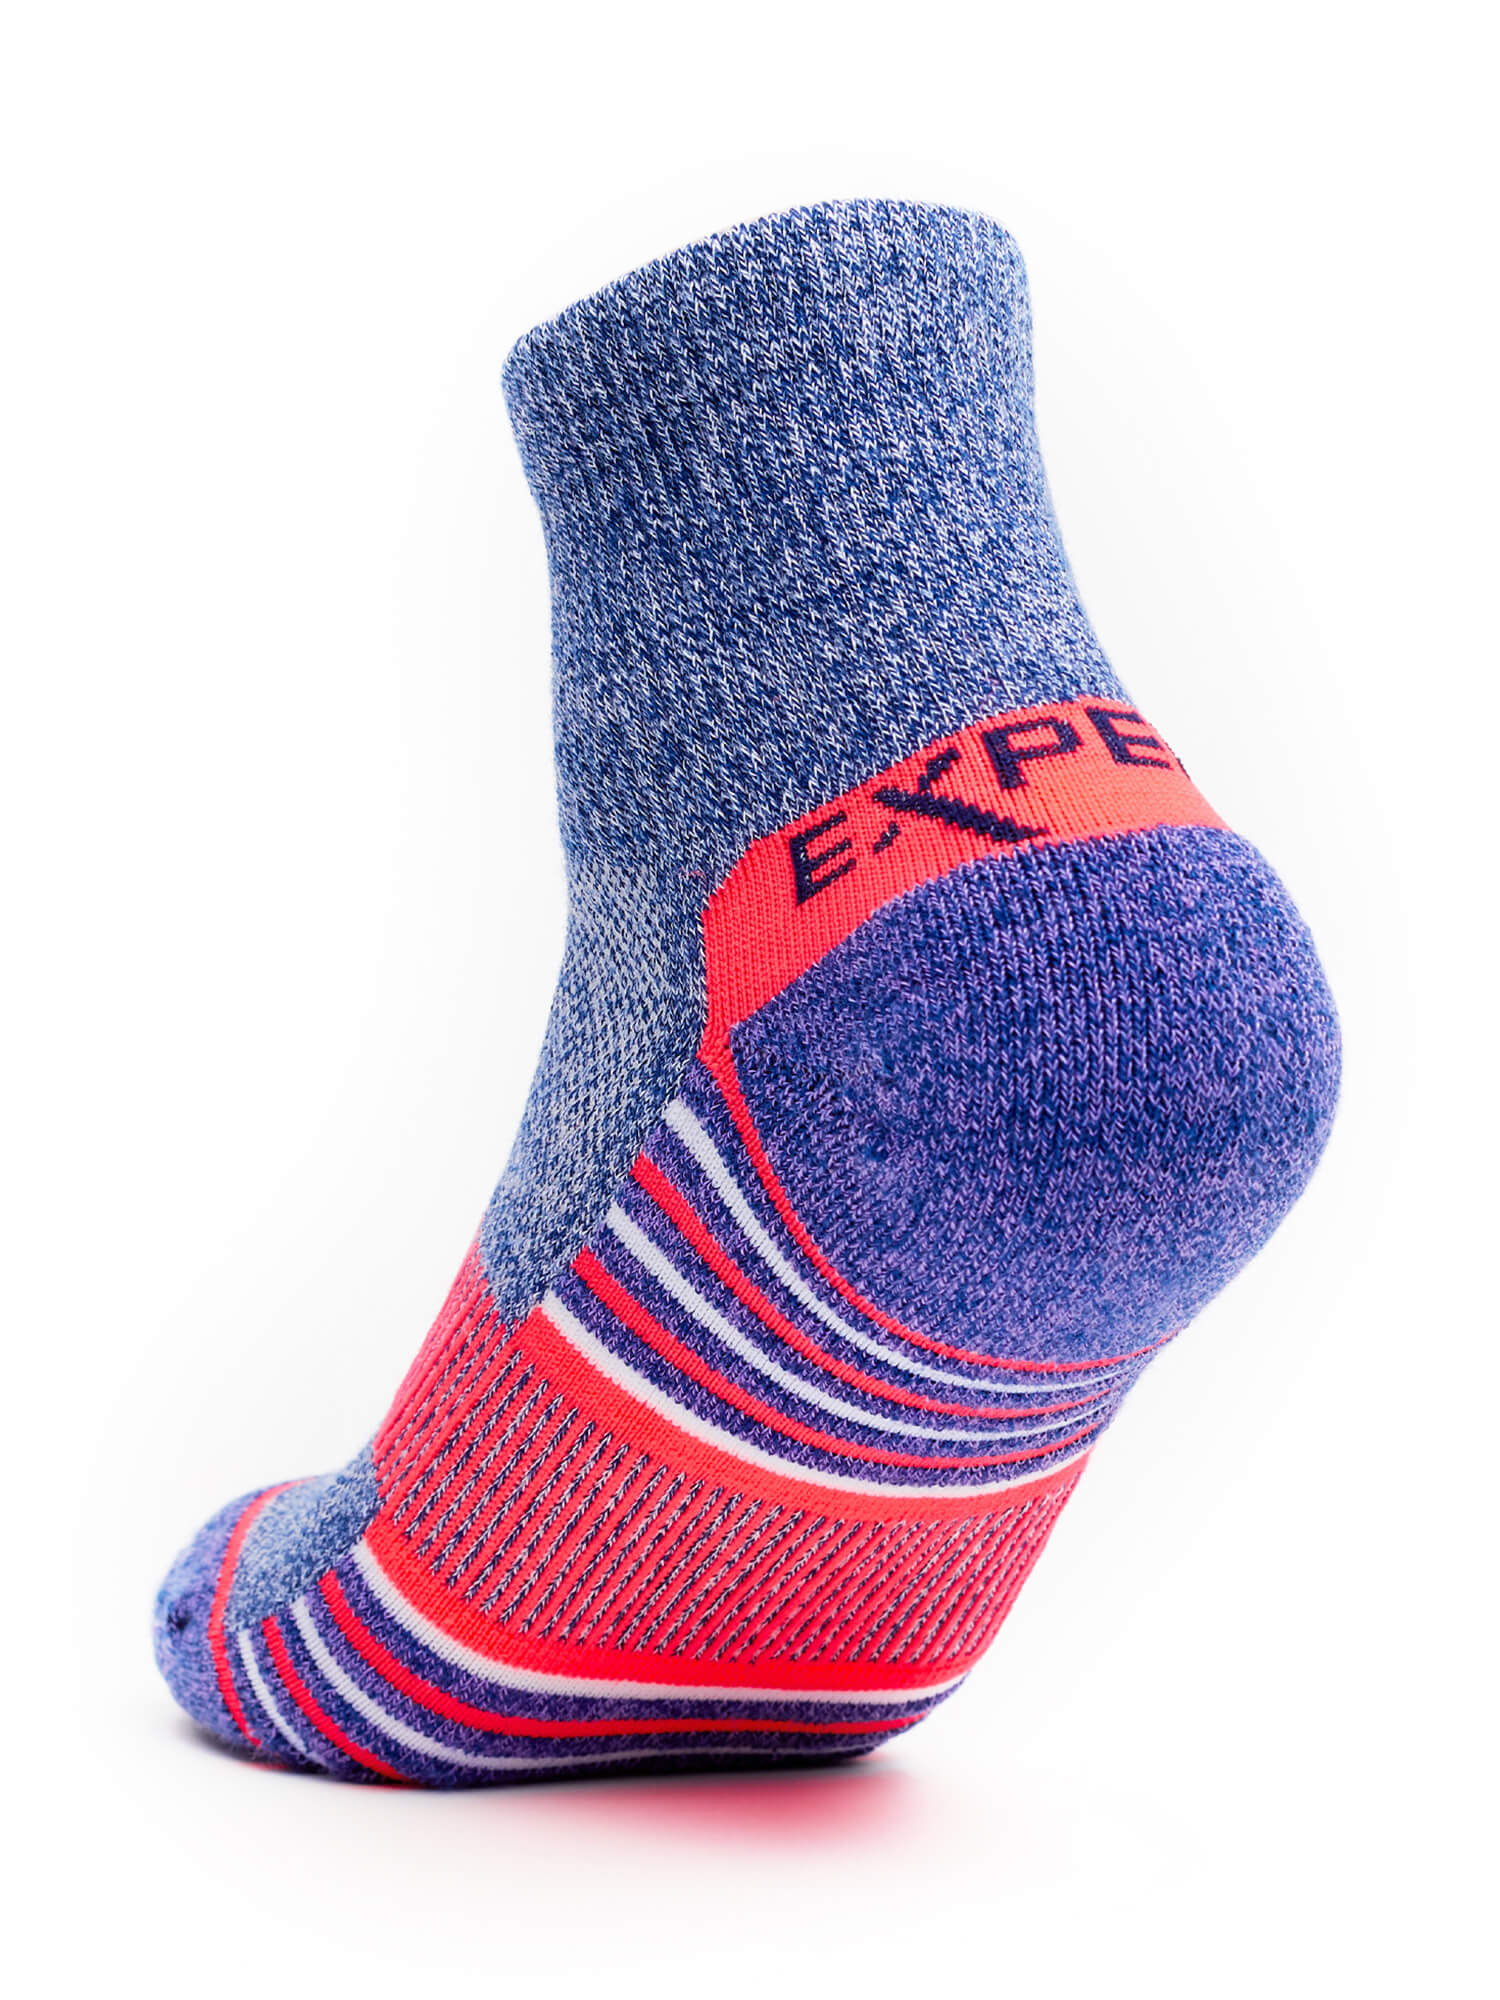 Heel of Thorlos Experia Repreve Ankle Socks in Purple